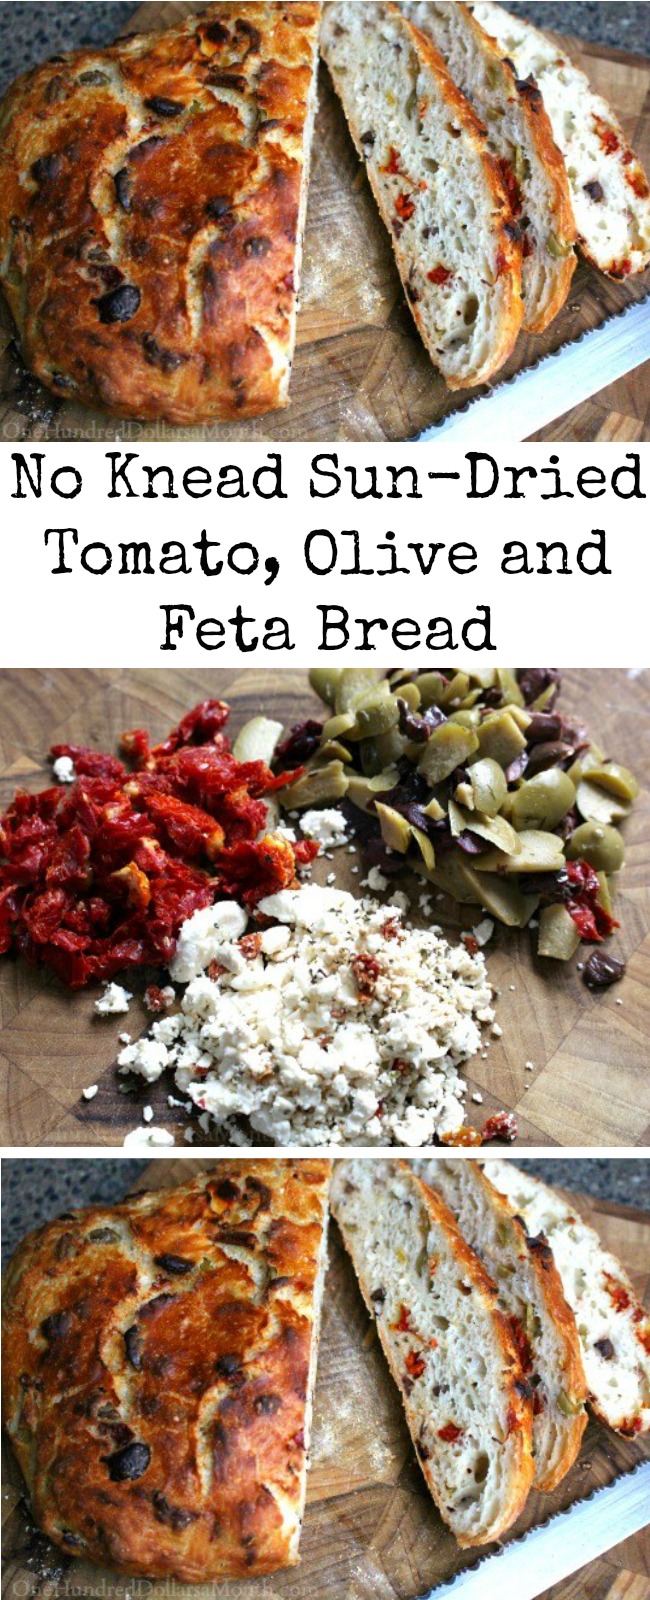 No Knead Sun-Dried Tomato, Olive and Feta Bread